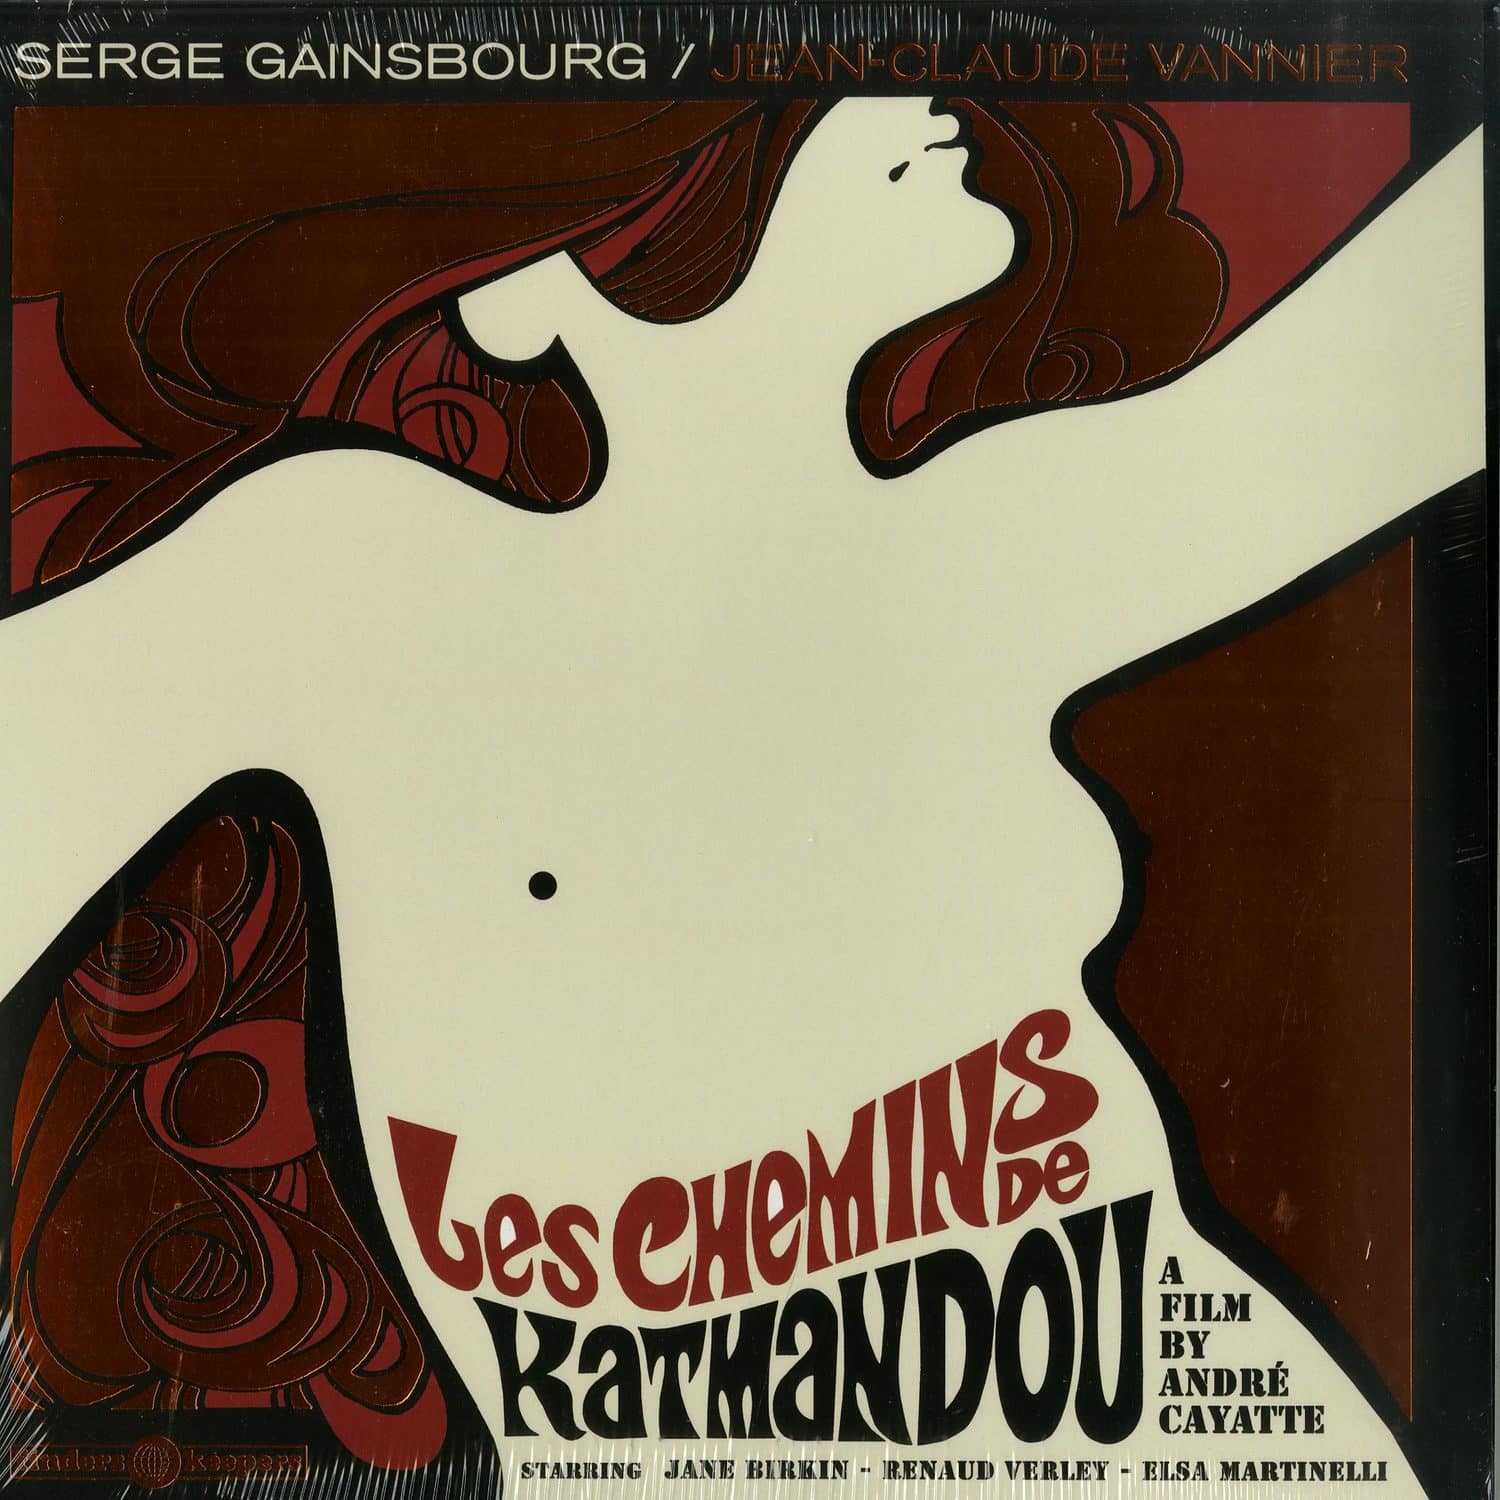 Serge Gainsbourg & Jean-Claude Vannier - LES CHEMINS DE KATMANDOU 